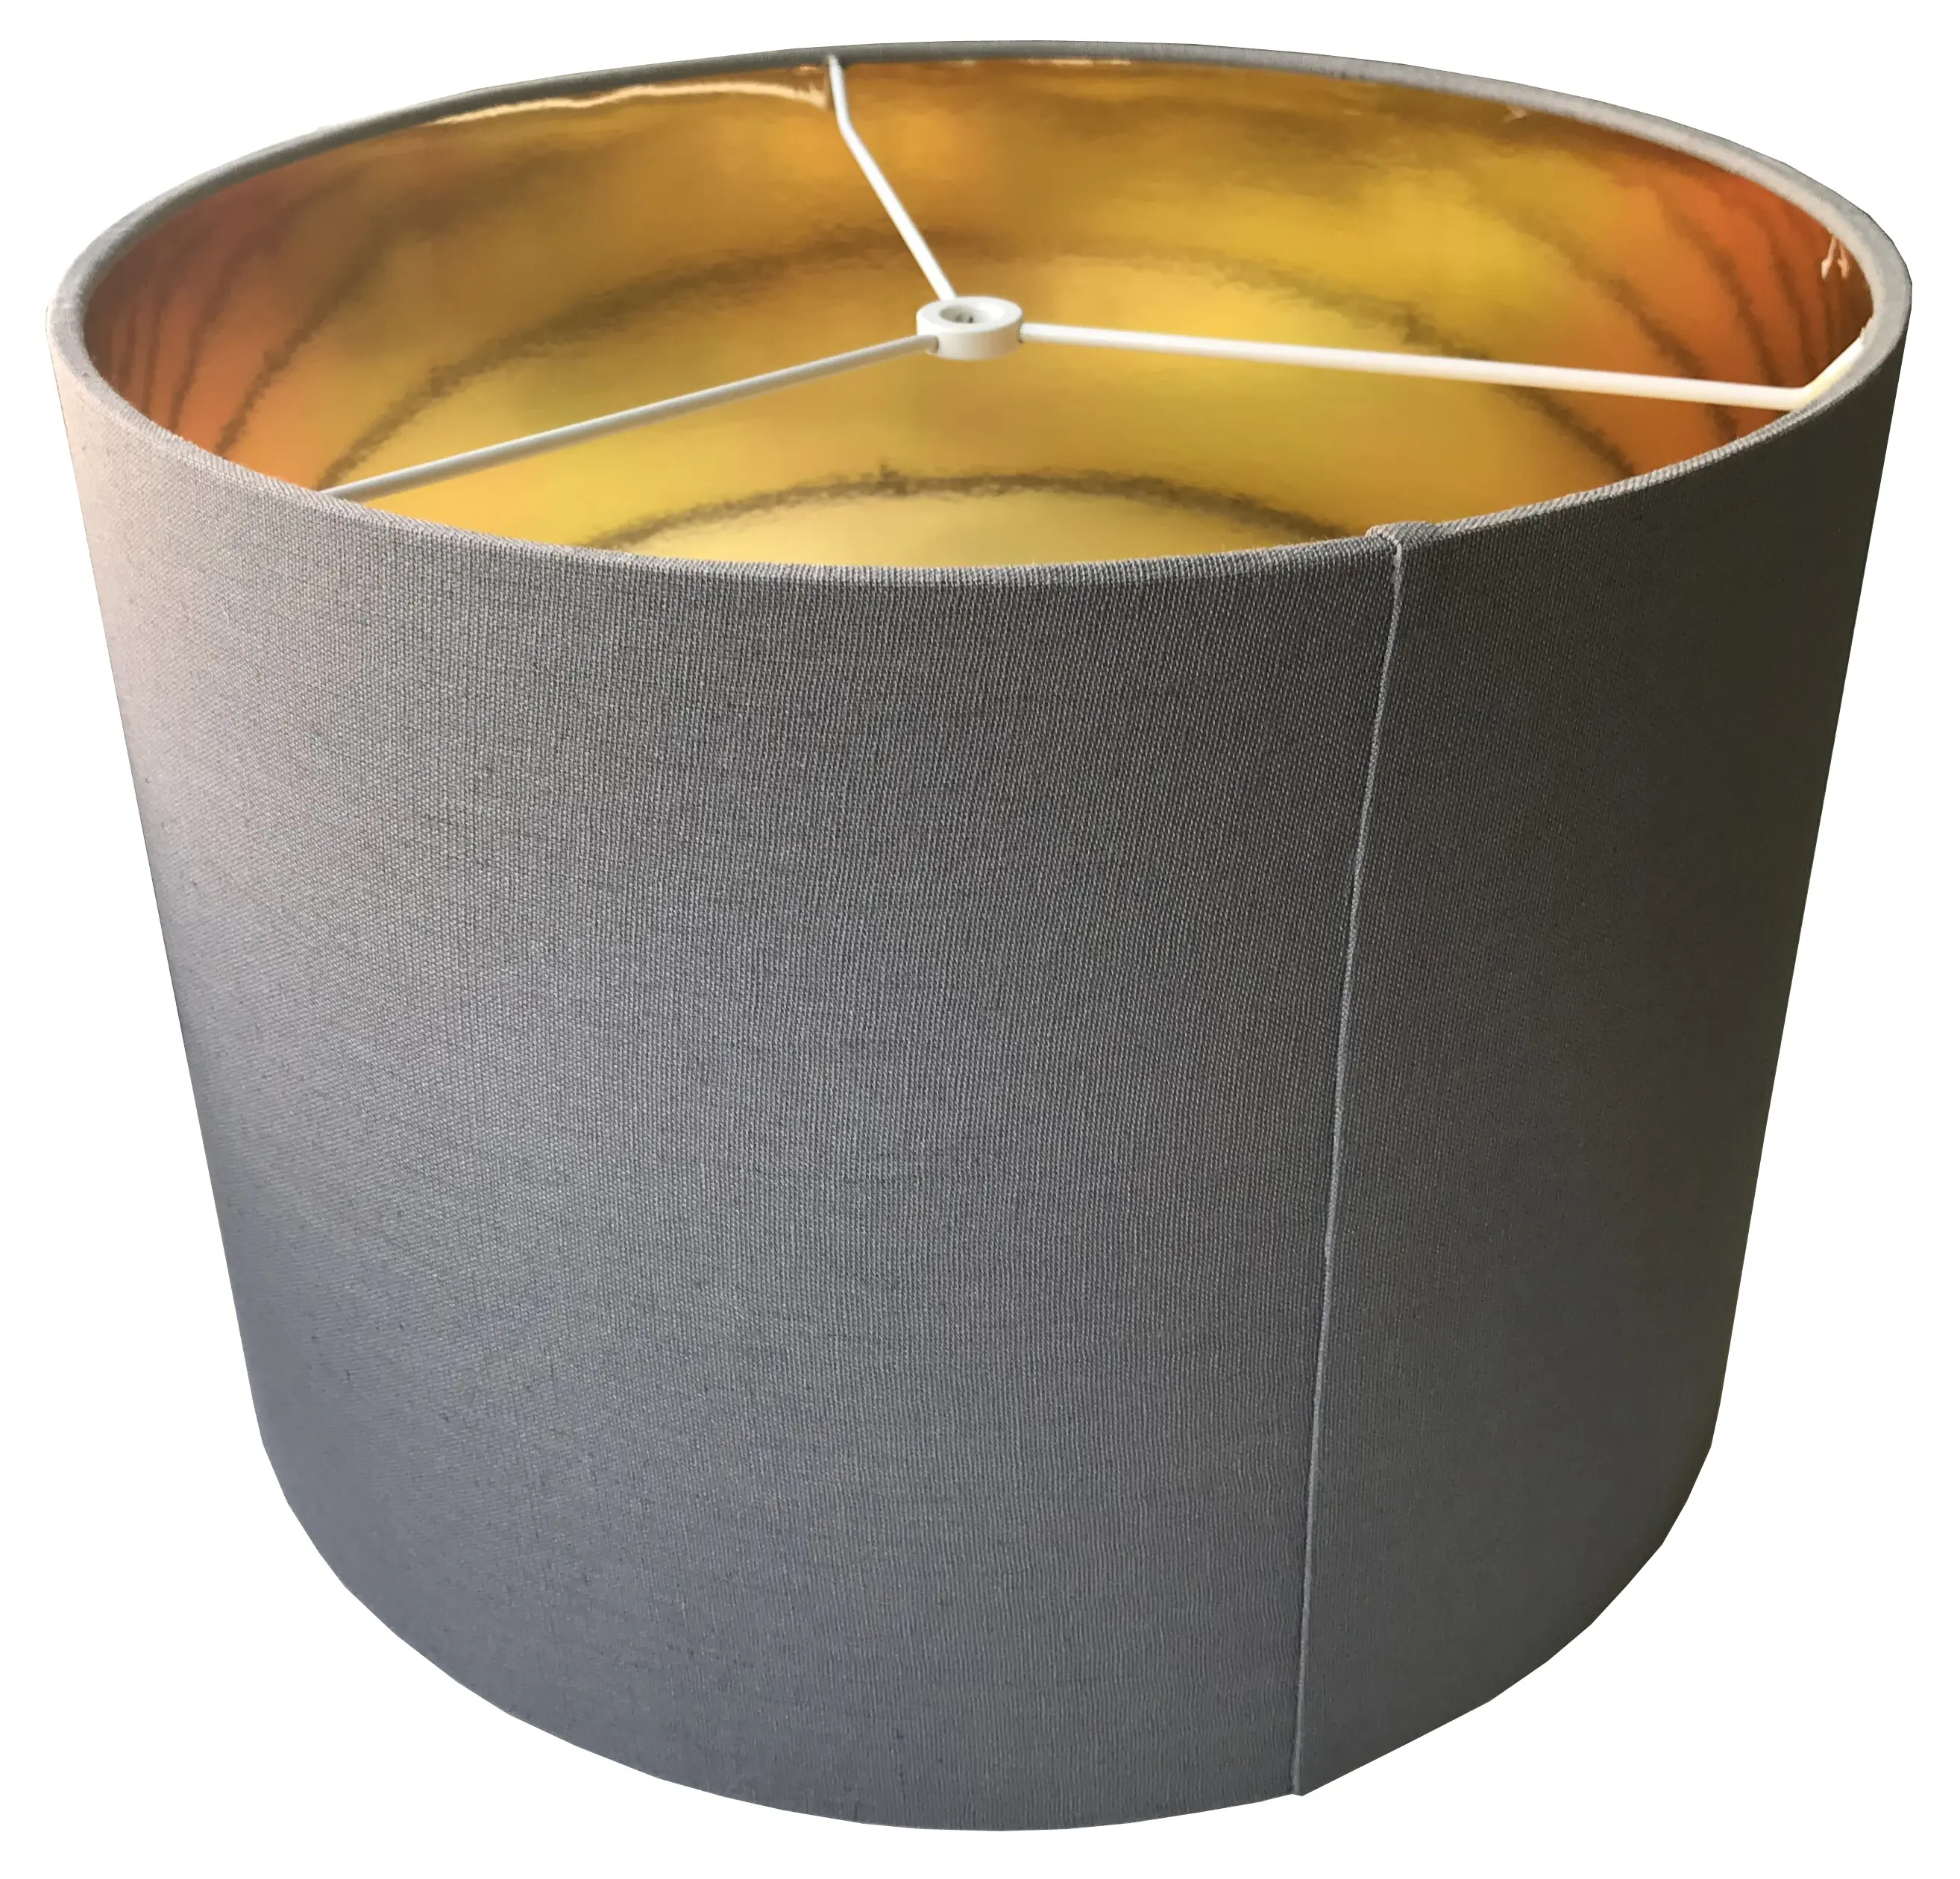 Fabric Light Shade Contemporary Drum Designer Modern Fabric Copper Ceiling Light Shade